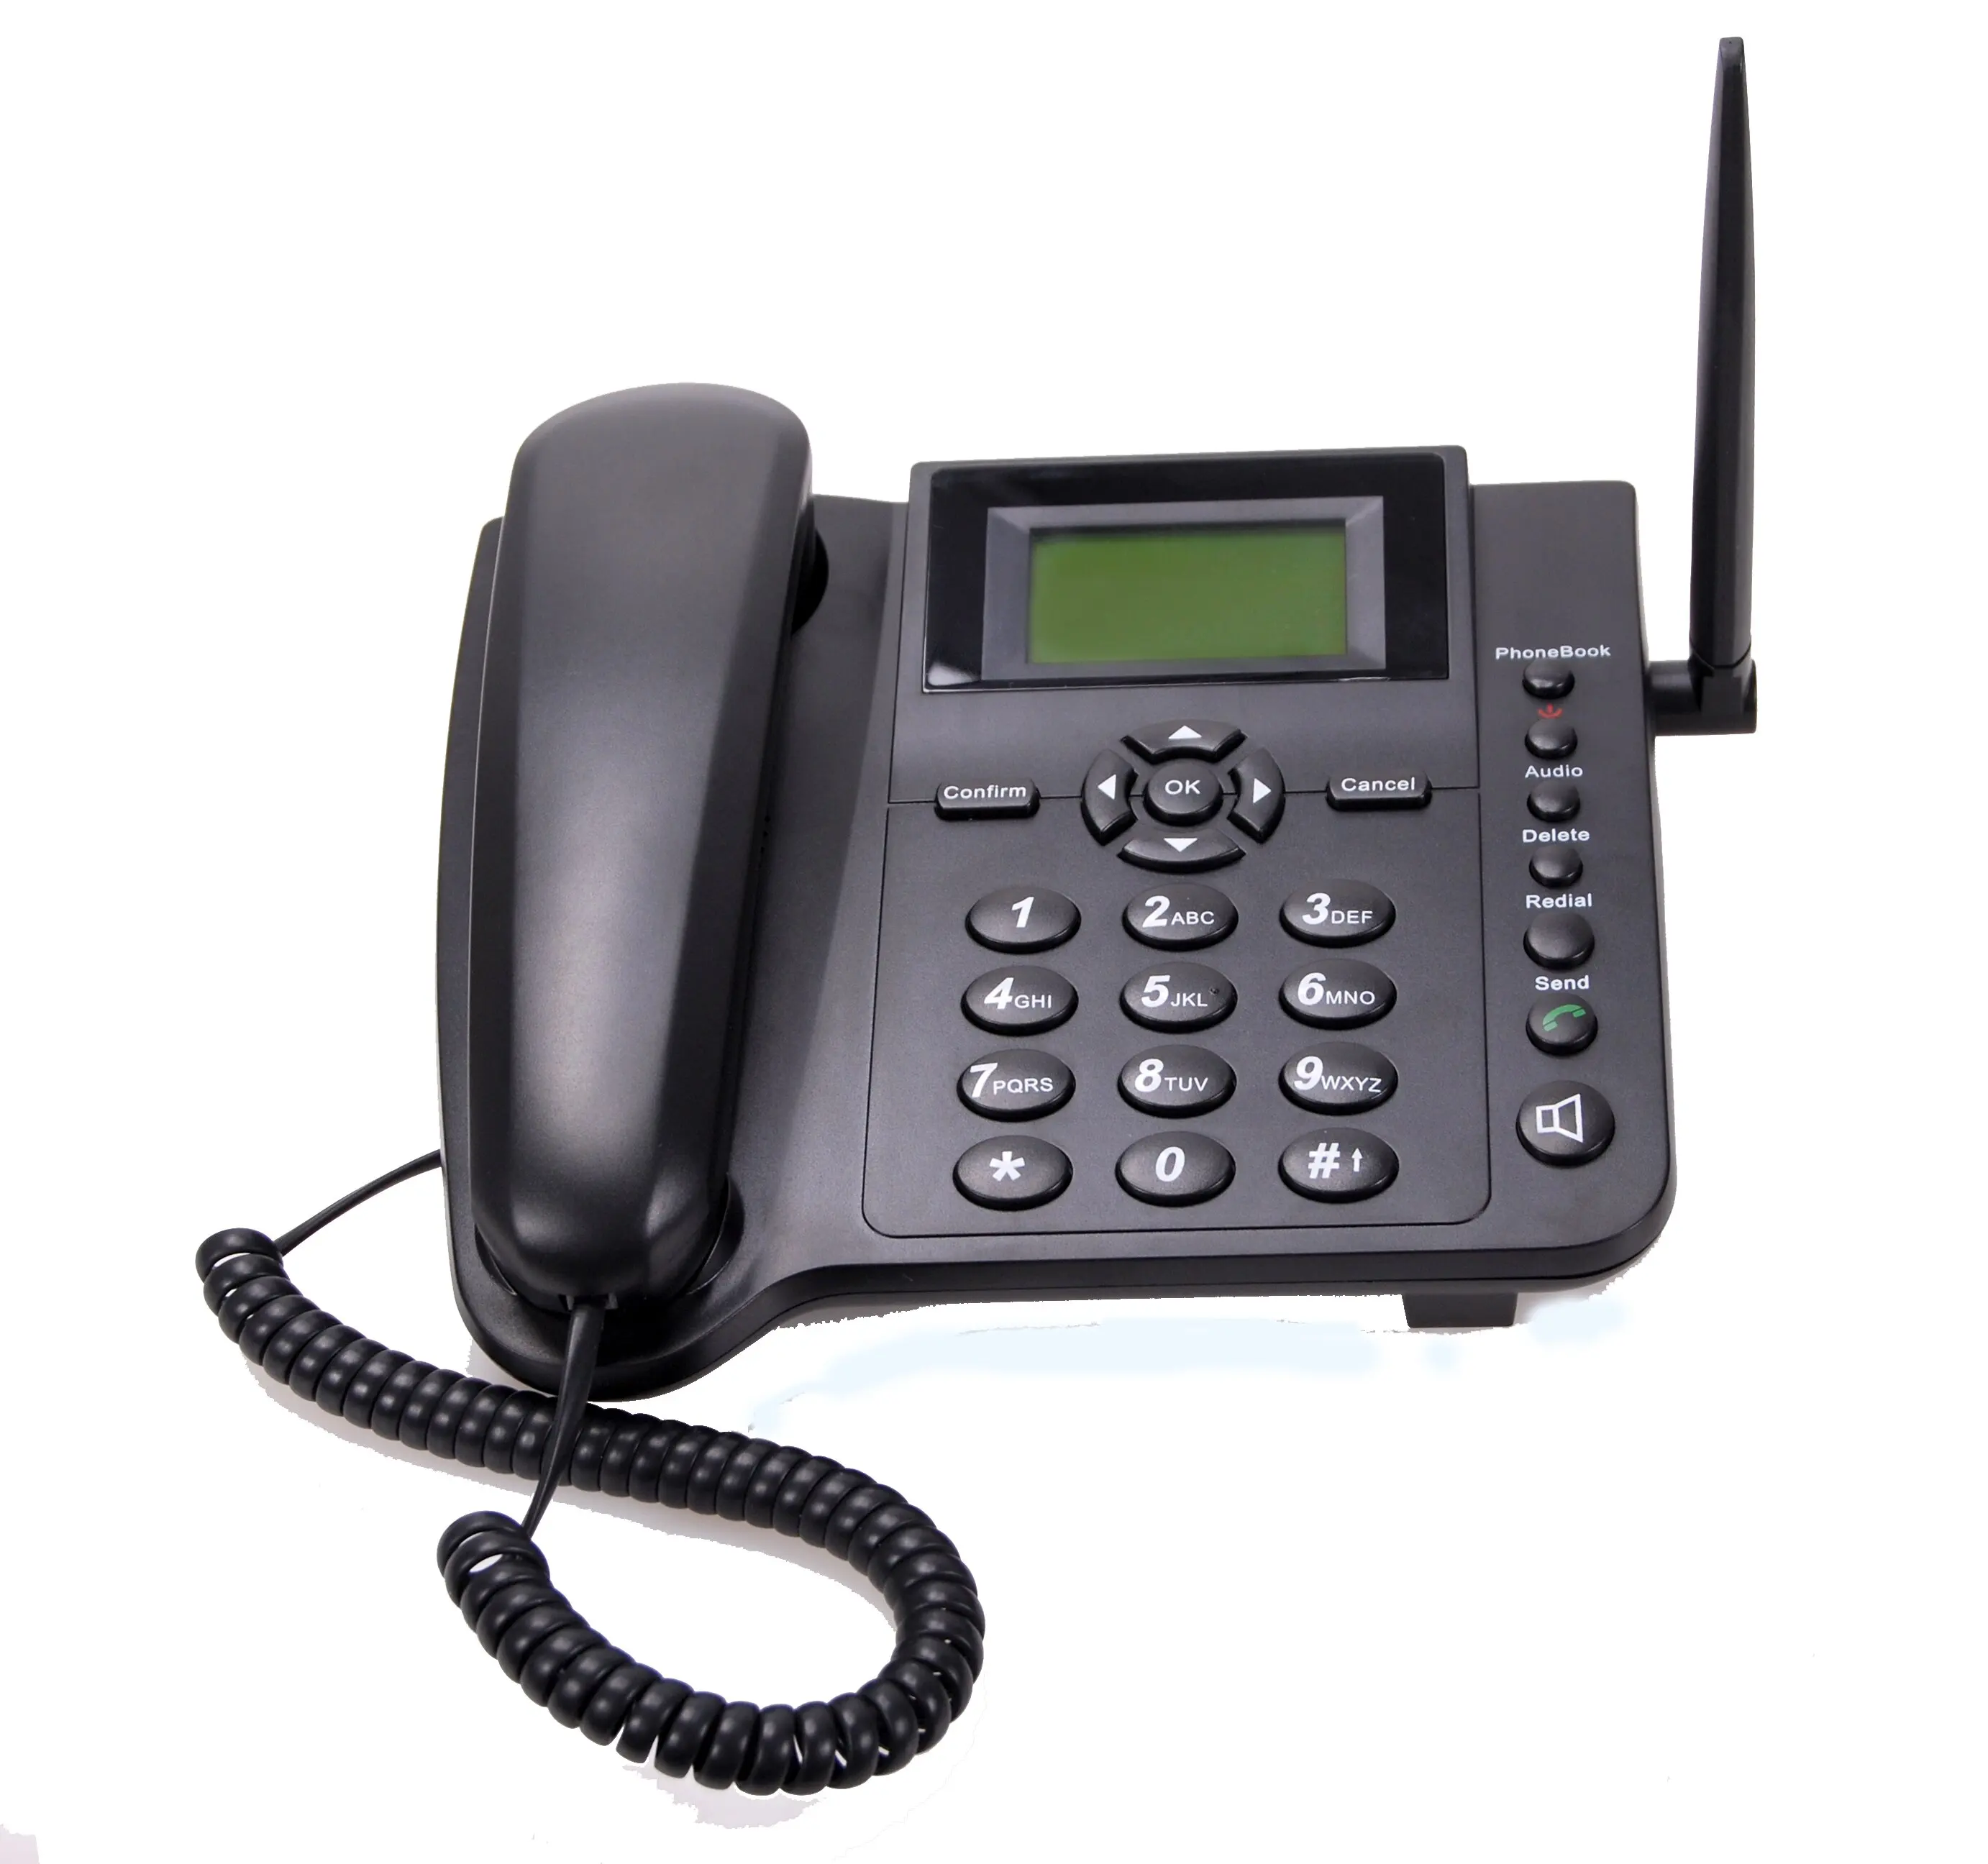 Стационарный телефон с 3g. GSM терминал стационарного телефона. Телефон стационарный беспроводной. Стационарный беспроводной телефон GSM. GSM fixed Wireless Phone model no: 6588.